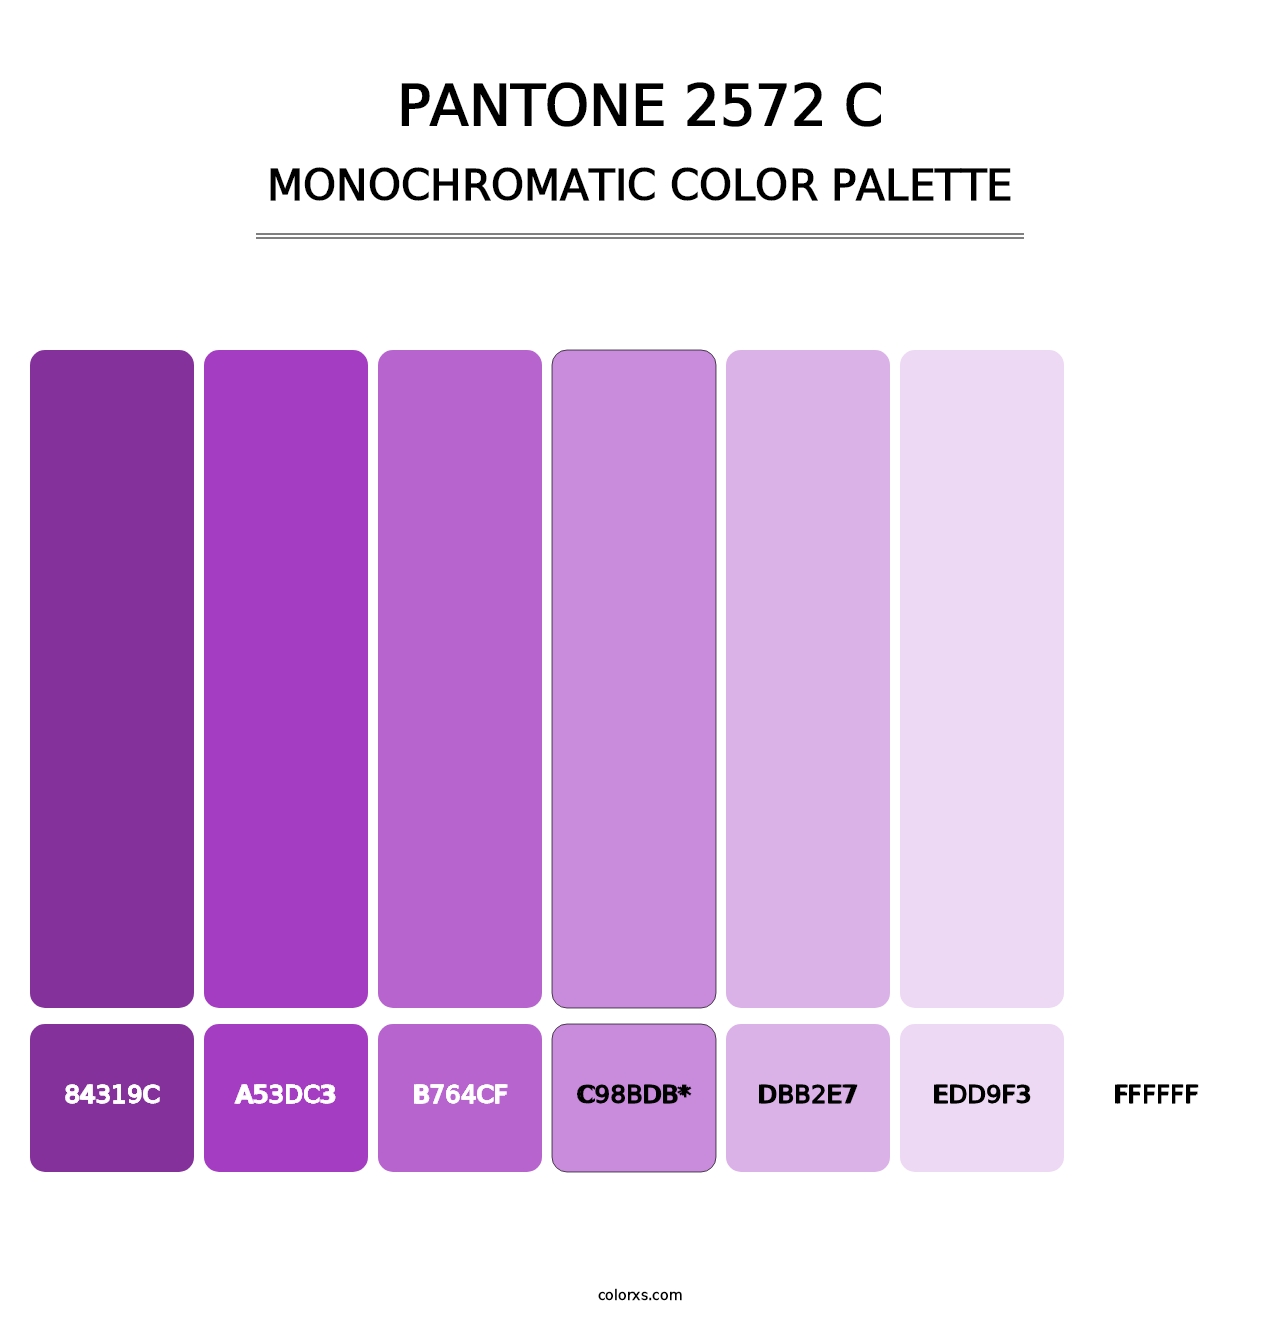 PANTONE 2572 C - Monochromatic Color Palette